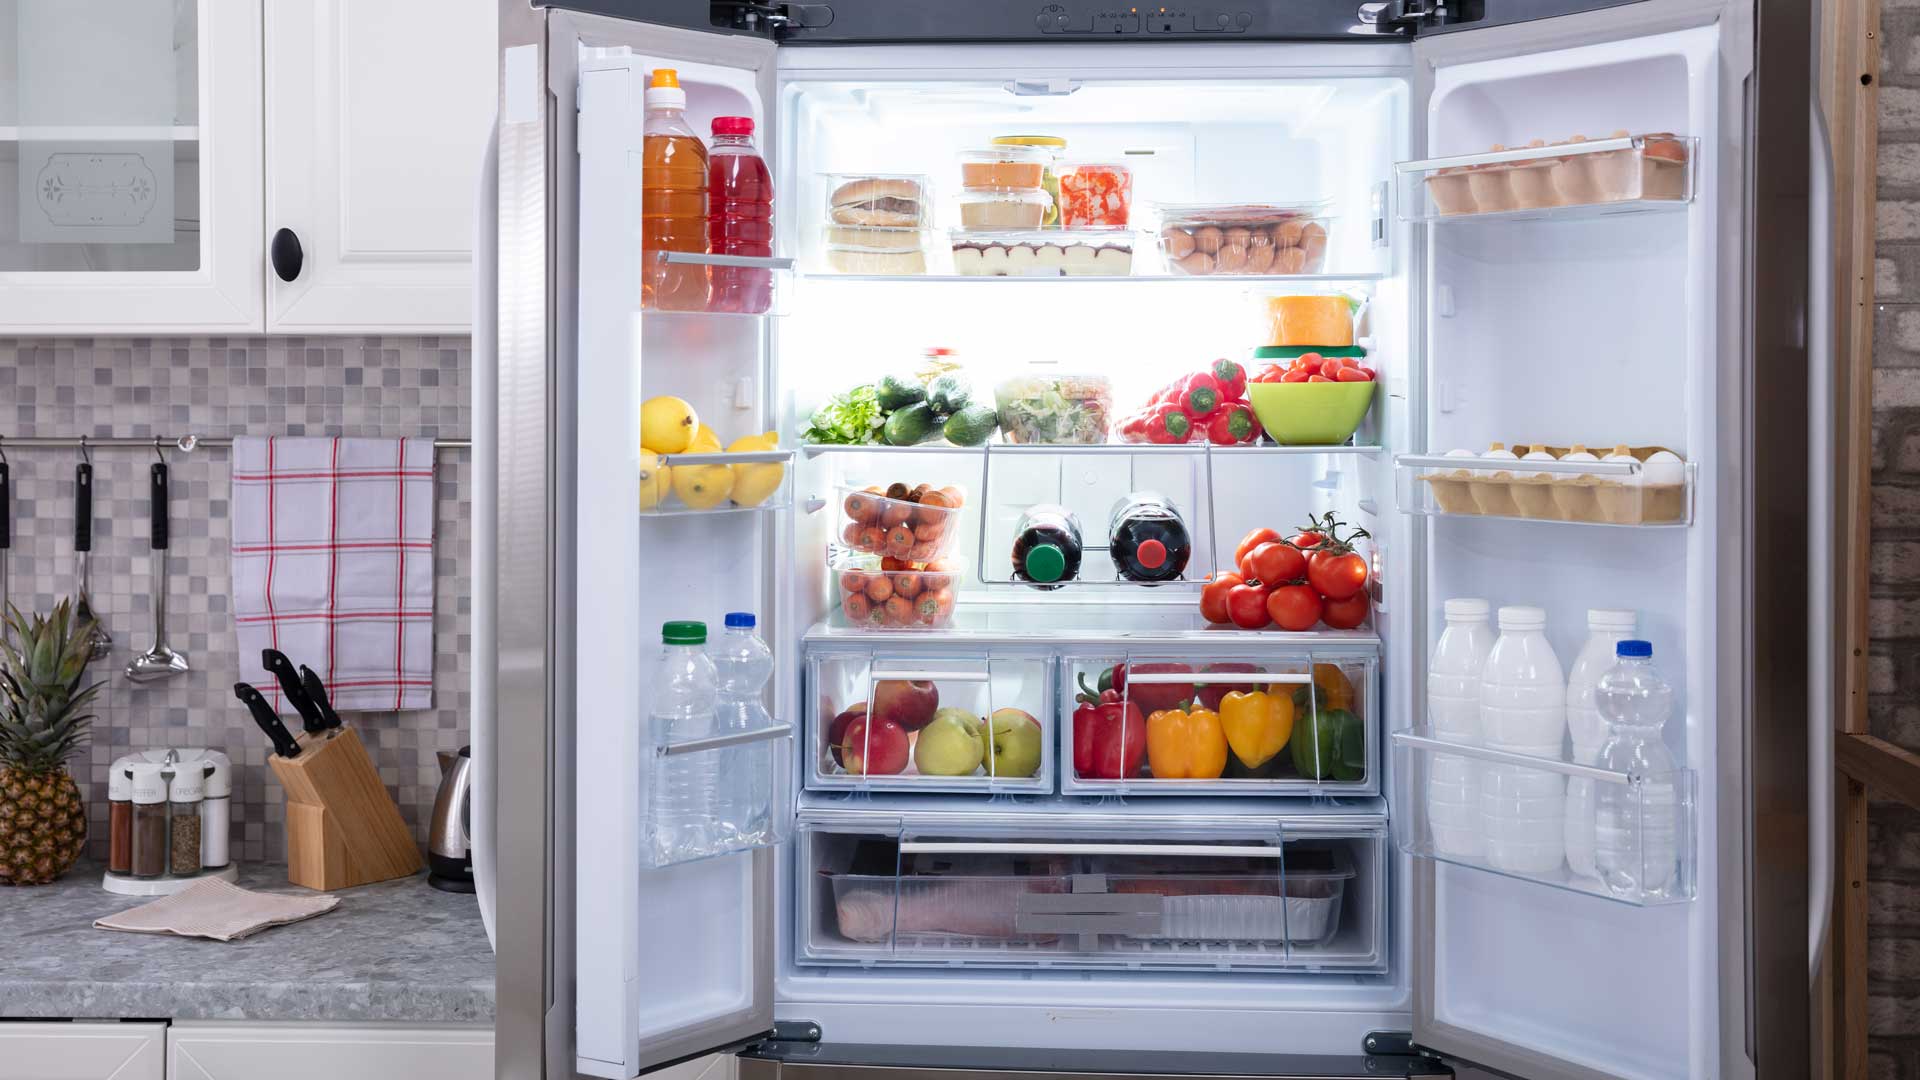 Open fridge, full of fresh fruits, vegetables, and eggs